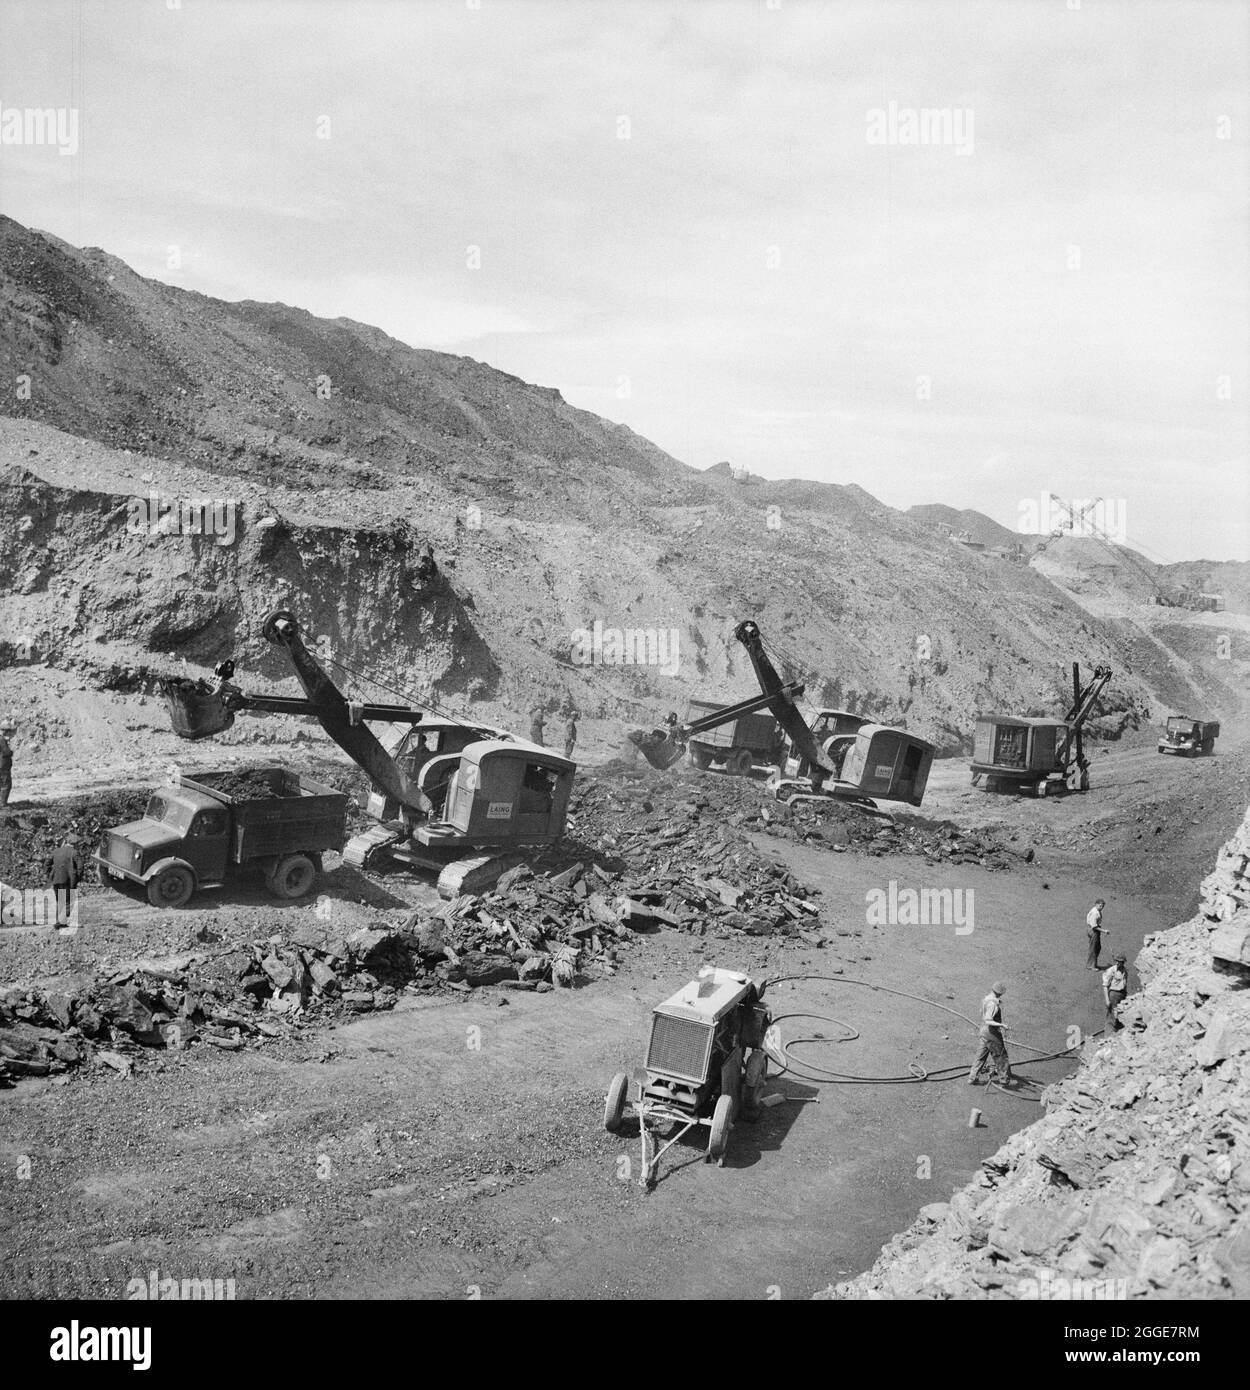 Ein Blick auf eine nicht identifizierte Tagebau-Kohlemine mit Laing-Baggern, die Kohle abbauen, im Vordergrund. John Laing und Son Ltd hatten 1942 mit dem Tagebau begonnen, um den Kriegsbedarf zu decken. Die Arbeiten wurden nach dem Krieg von der Firma erweitert. Stockfoto